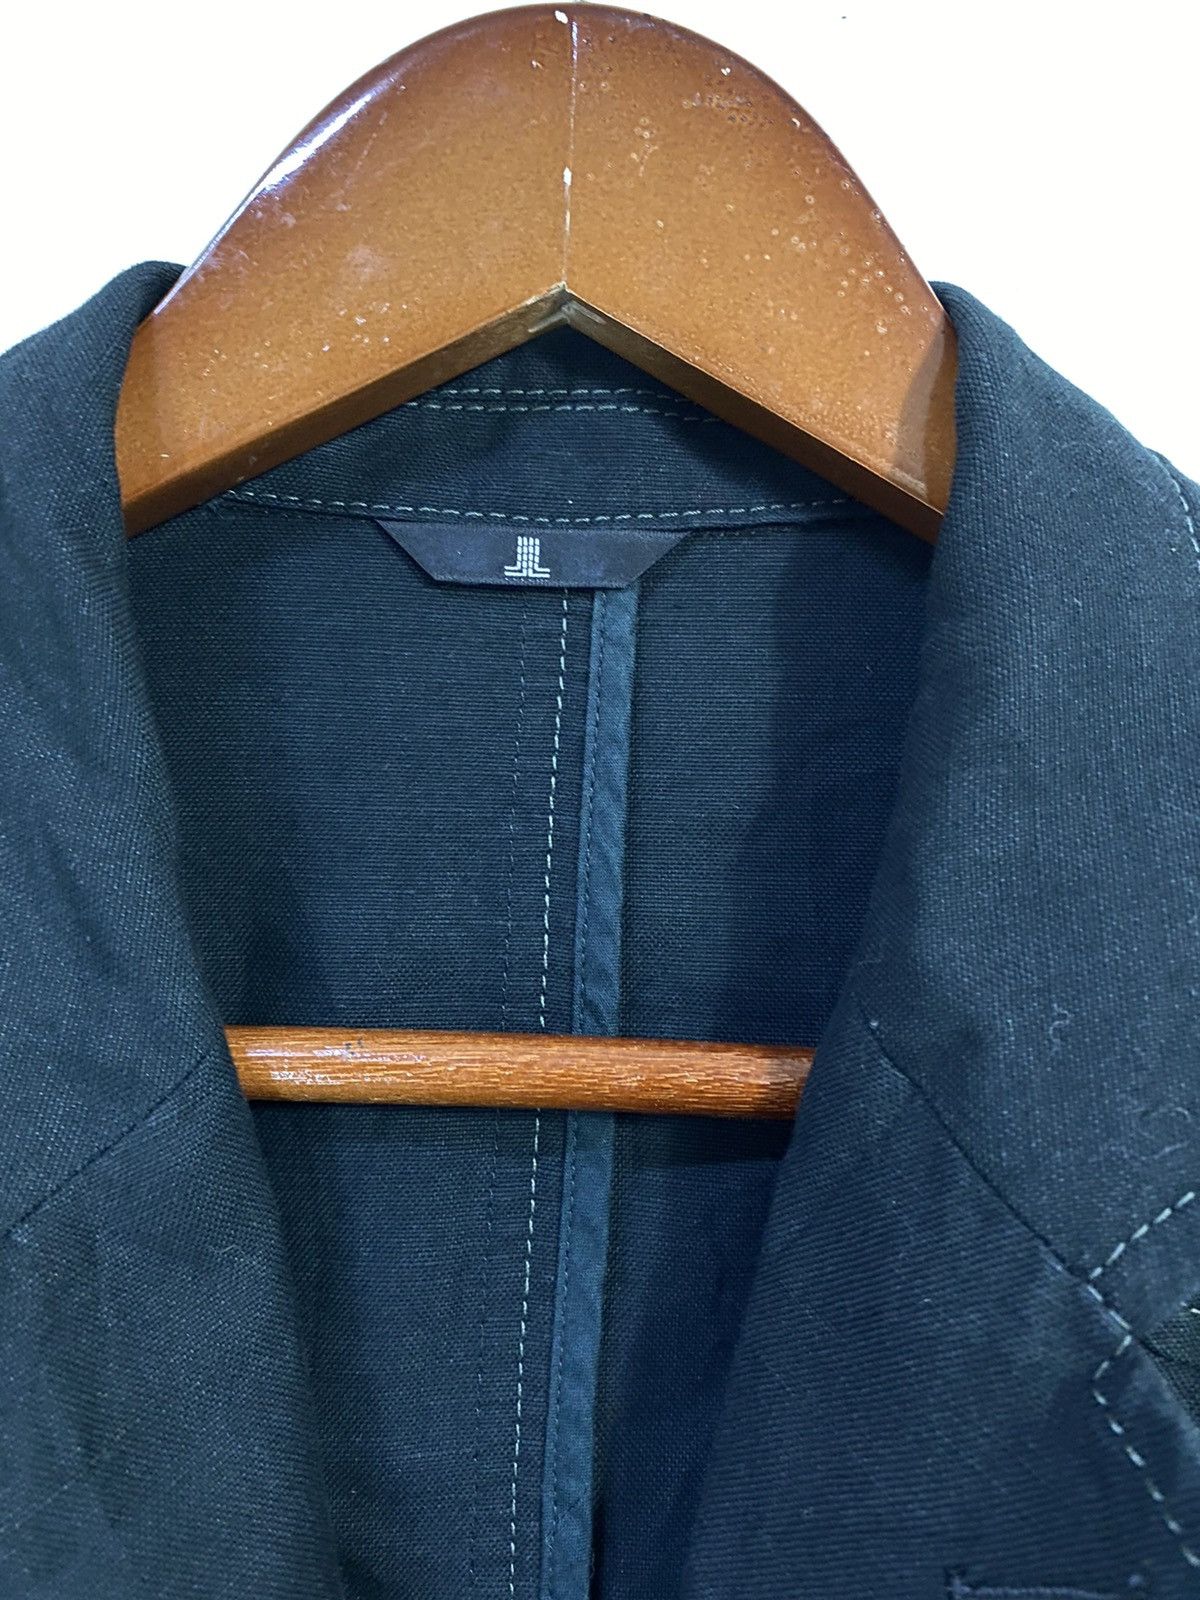 Lanvin Linen Jacket 4 Pocket Design Made in Japan - 5